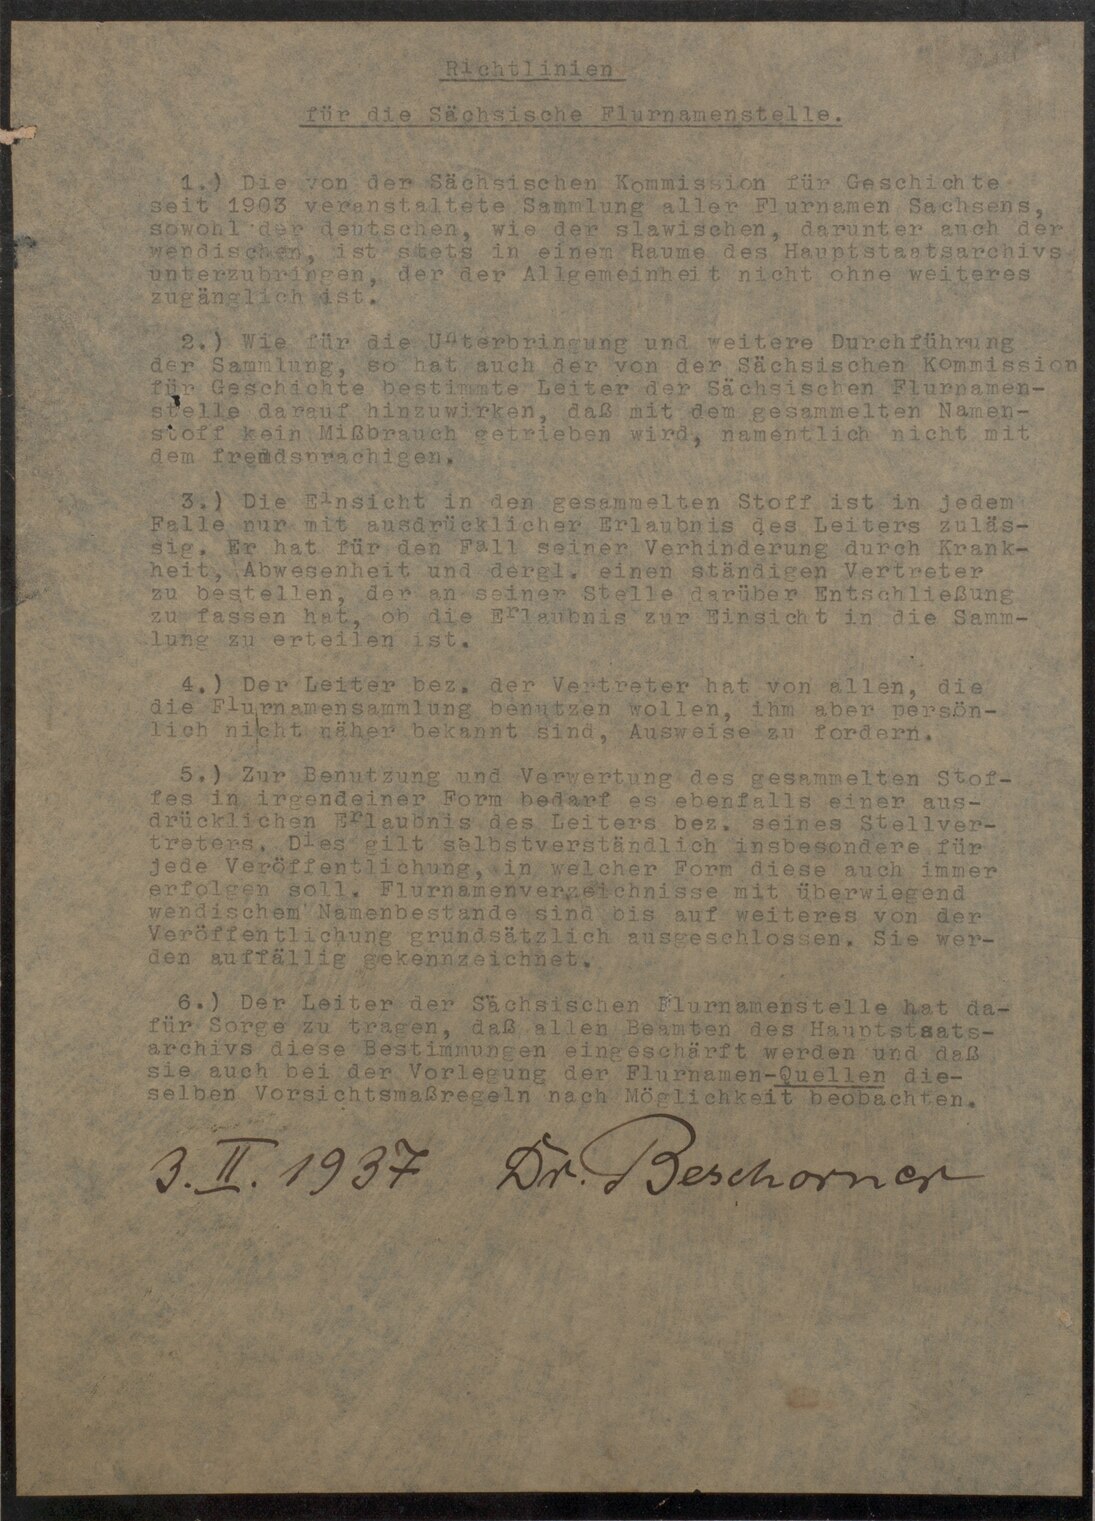 Richtlinien für die Sächsische Flurnamenstelle, 1937